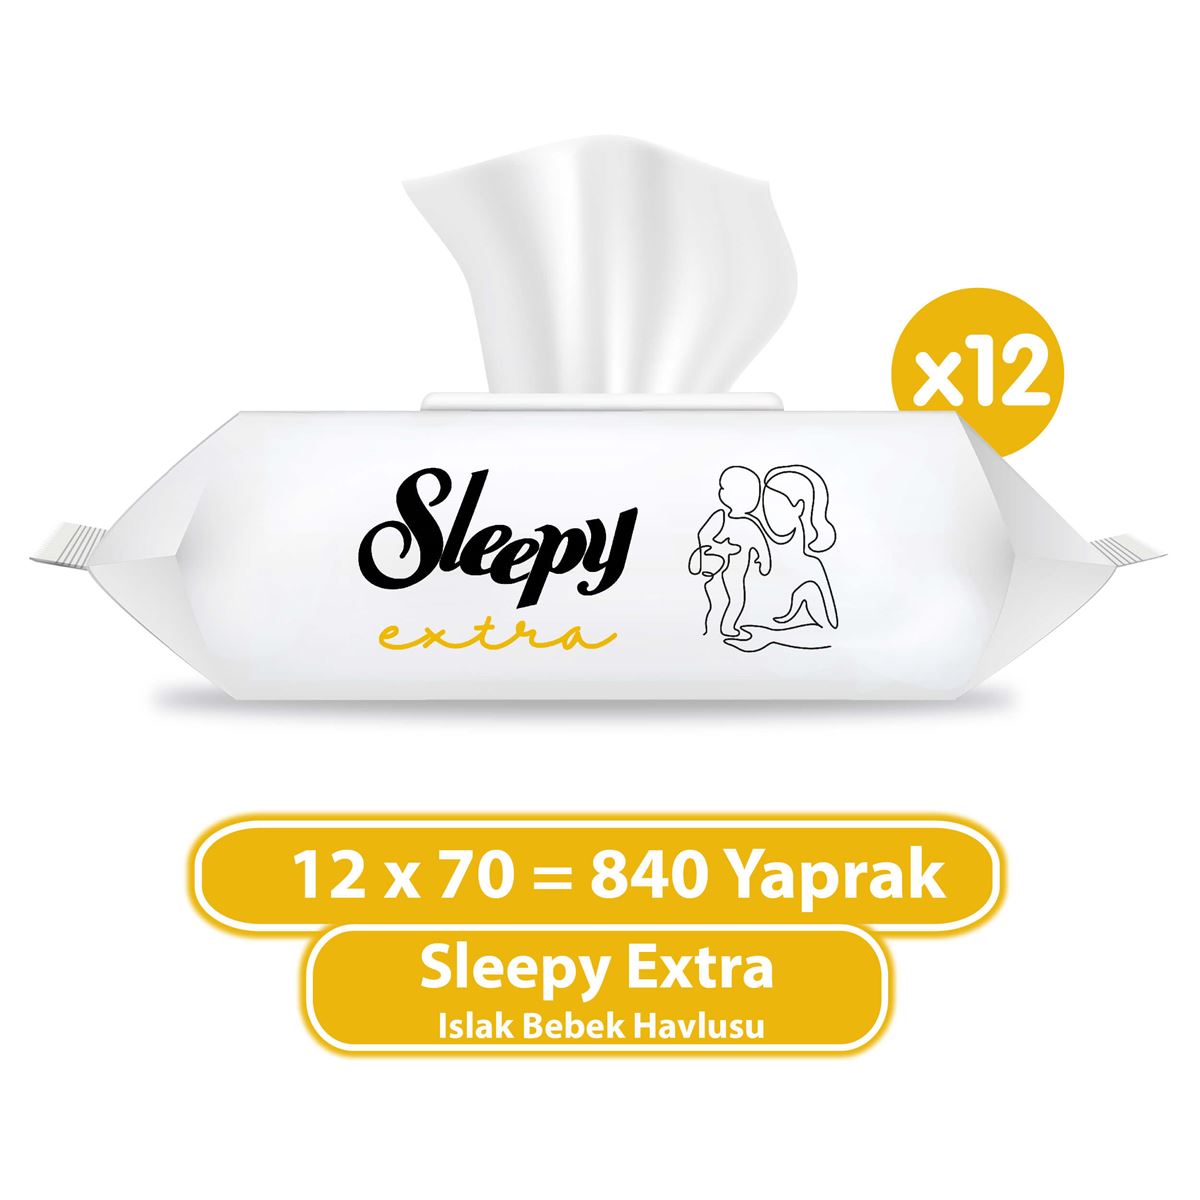 Sleepy Extra Islak Bebek Havlusu 12x70 (840 Yaprak)